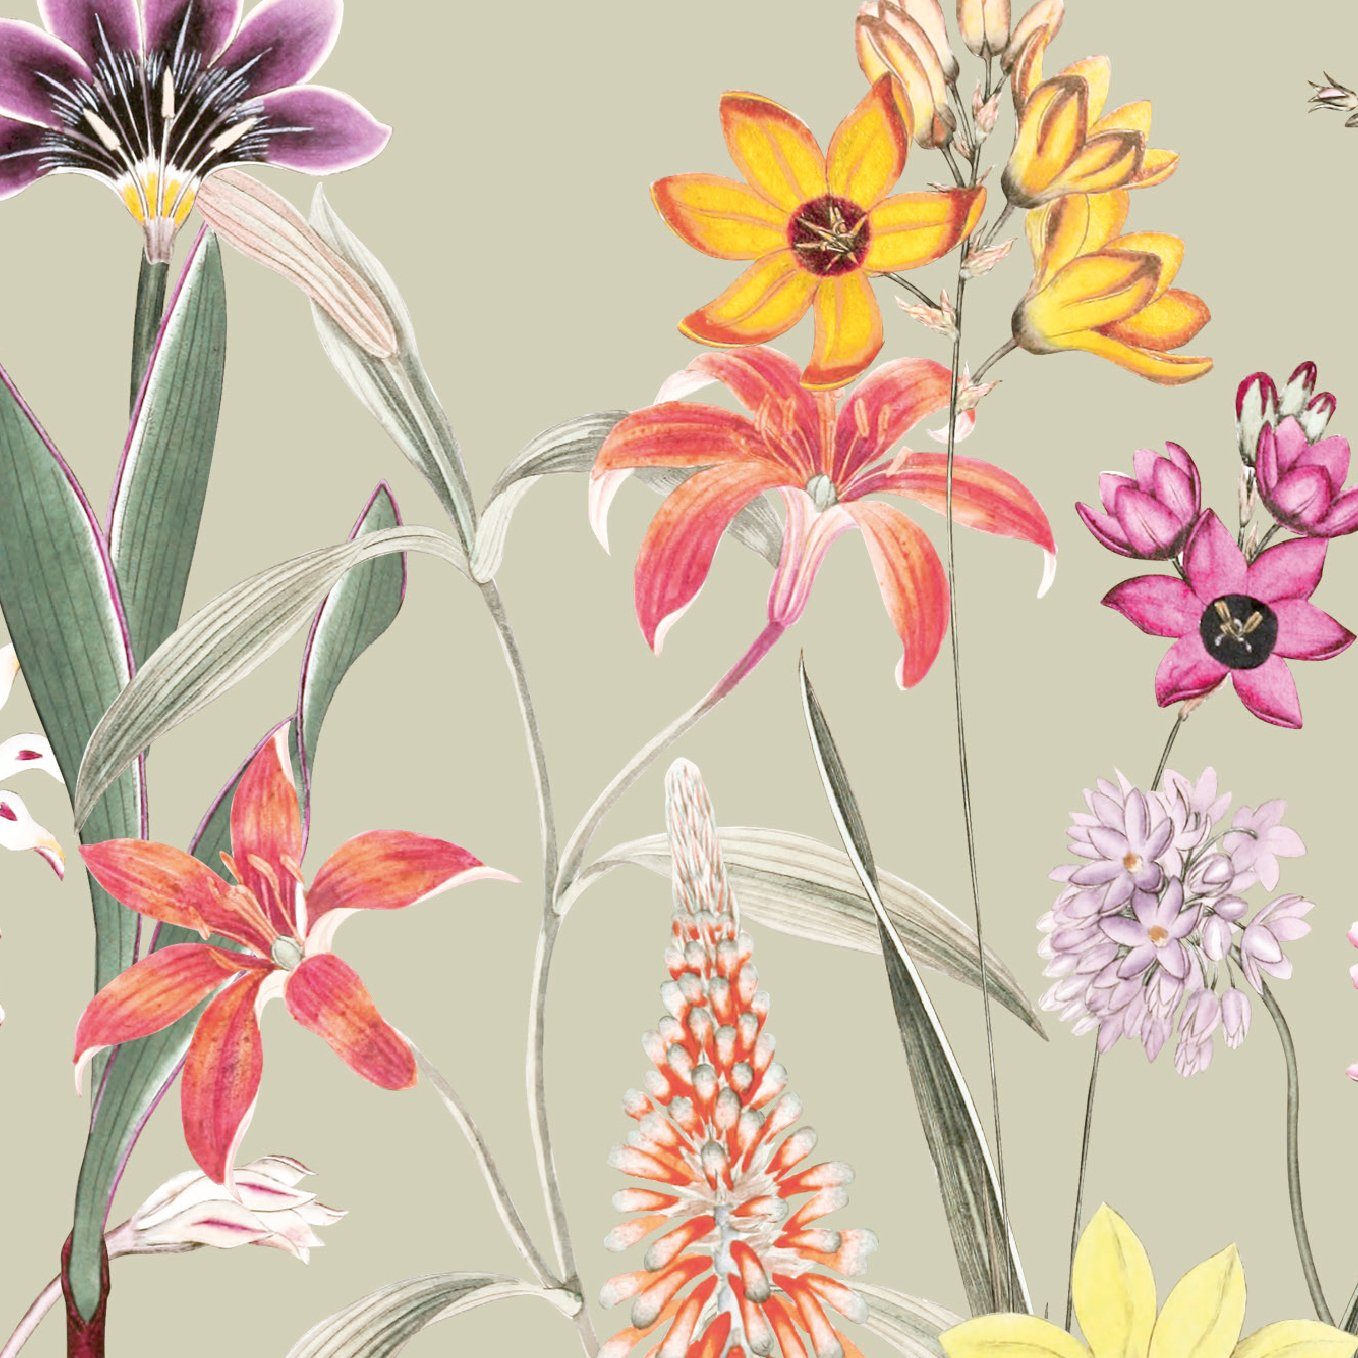 anna wand Bordüre Botanical Garden / Blumen - mehrfarbig/grün-beige - selbstklebend, floral, selbstklebend | Selbstklebende Tapeten